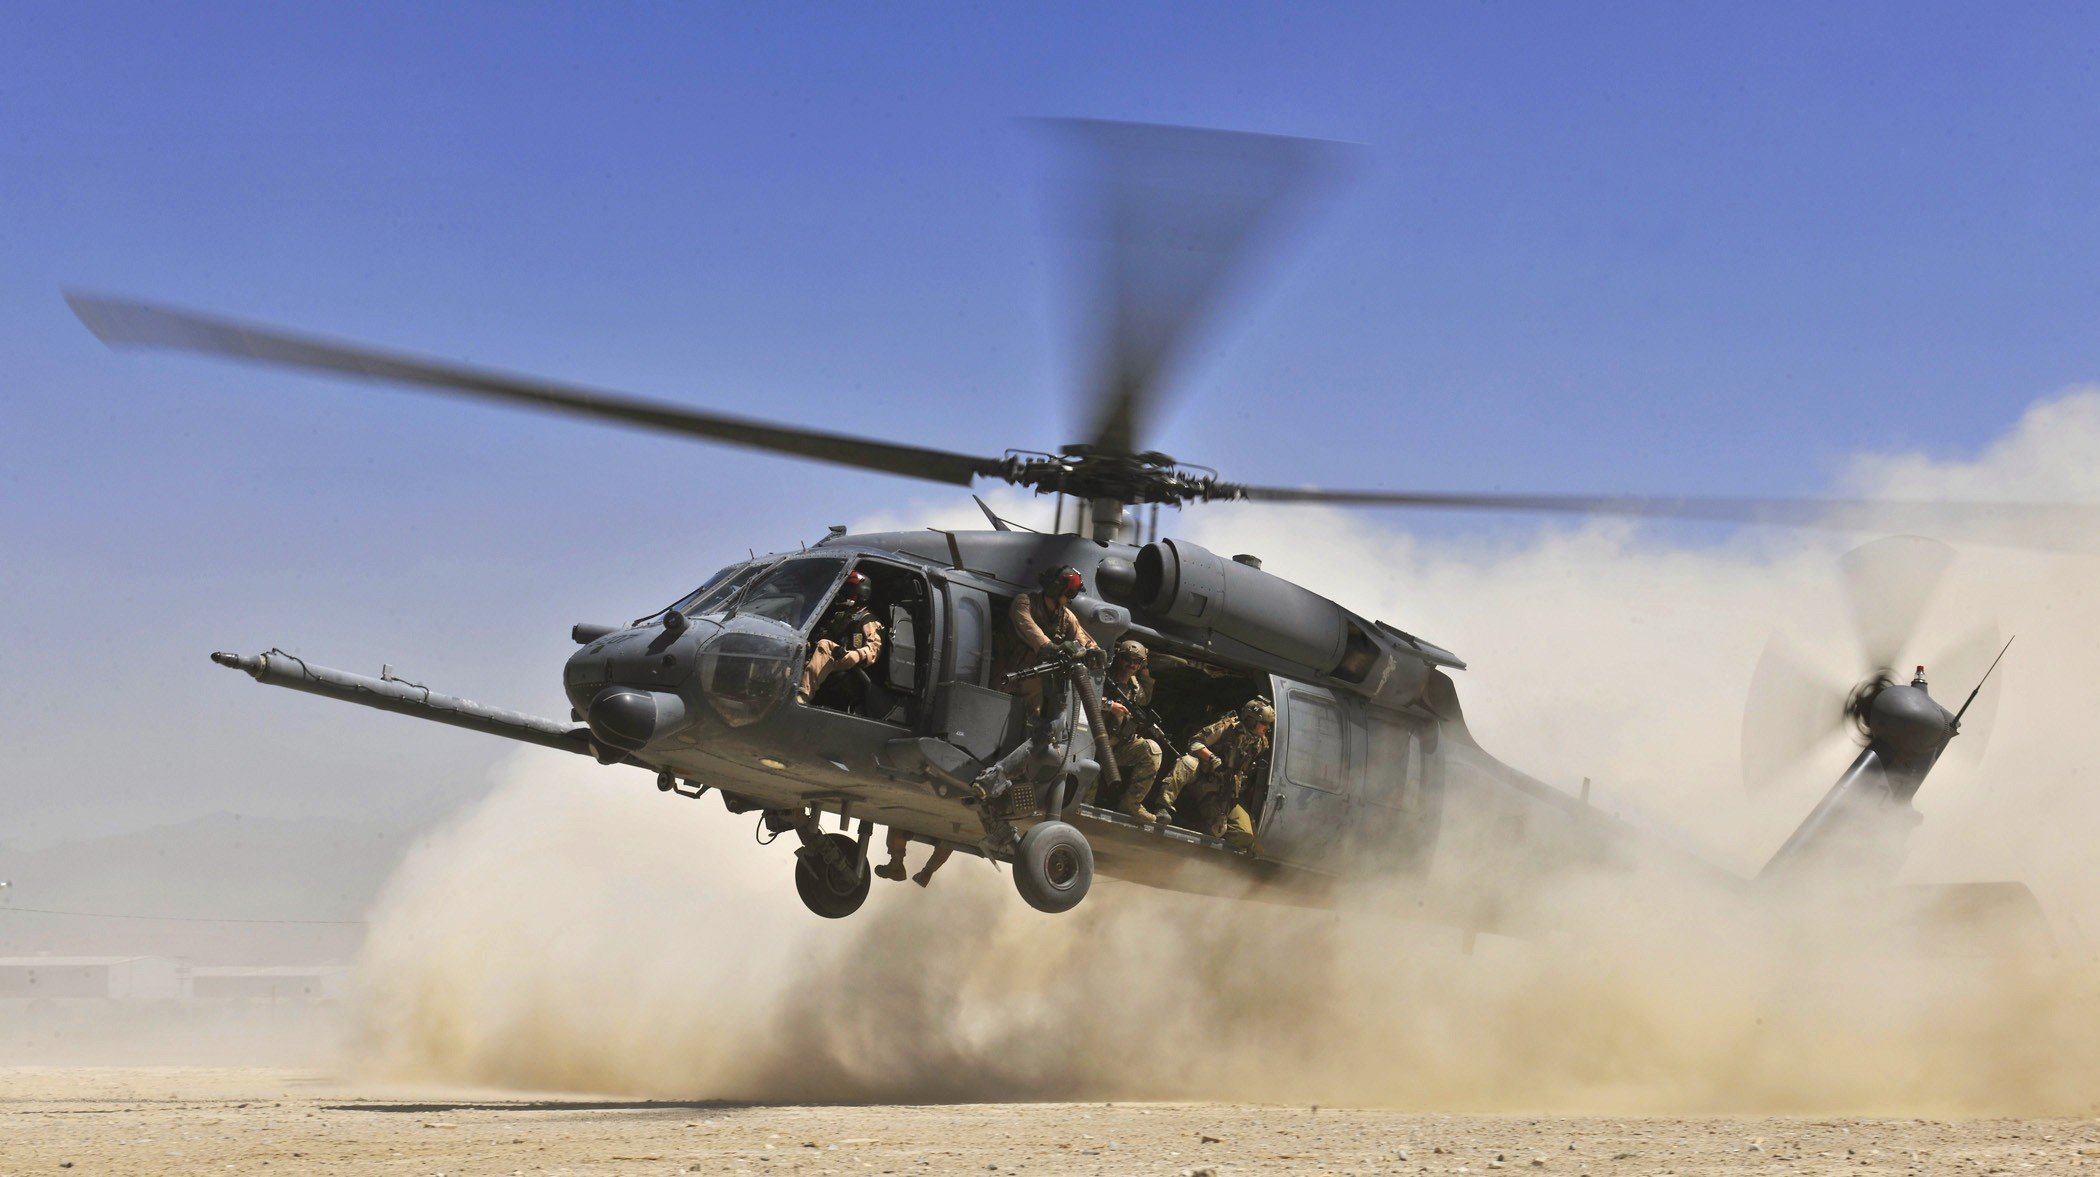 Sikorsky hh-60m medevac black hawk helicopter